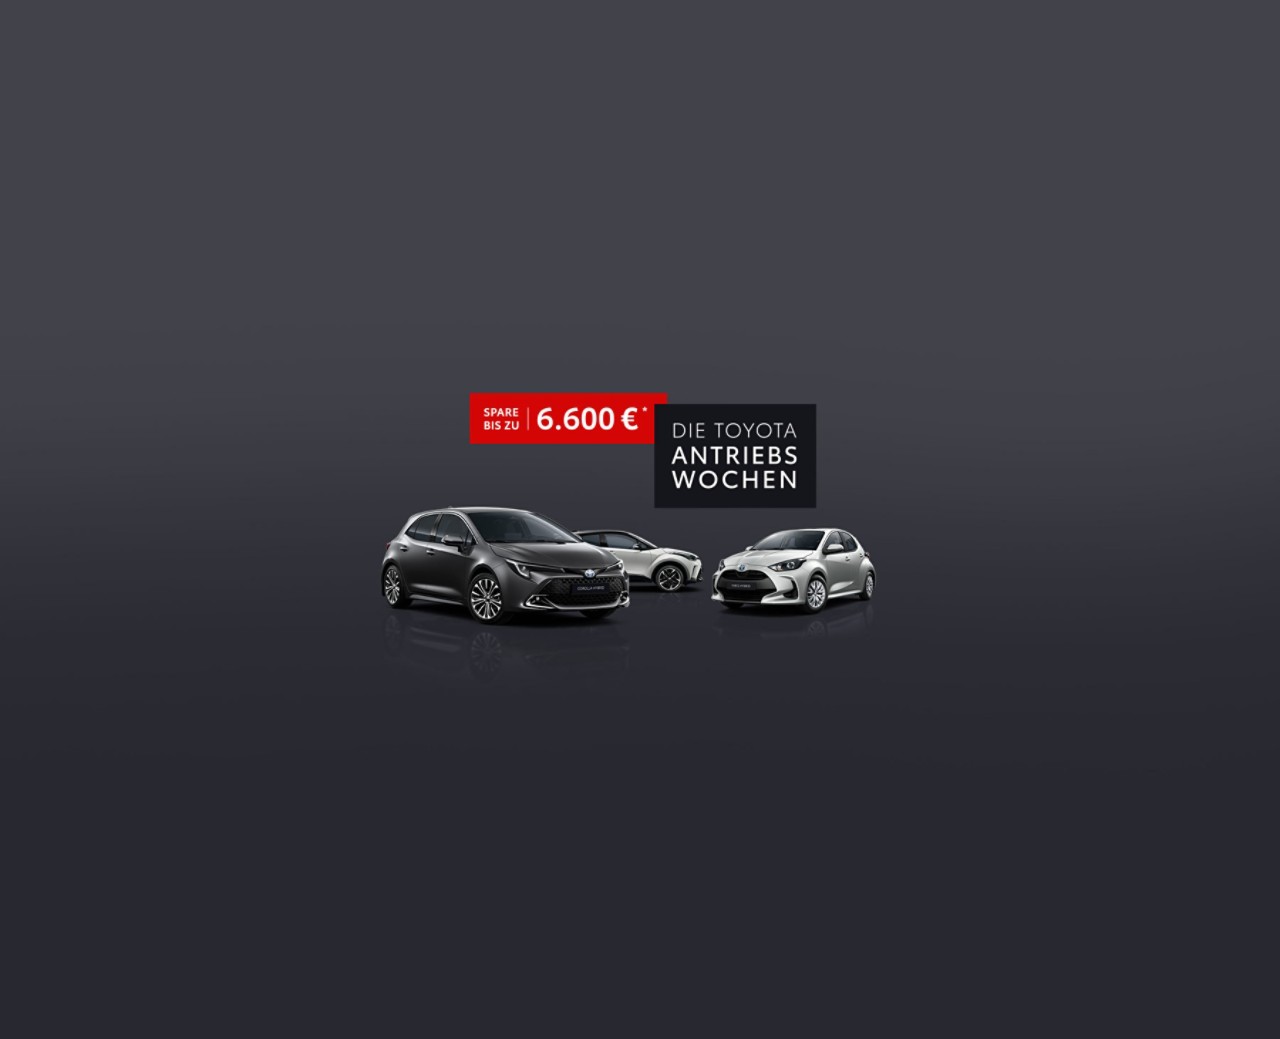 Teaser Bild für die Toyota Antriebswochen